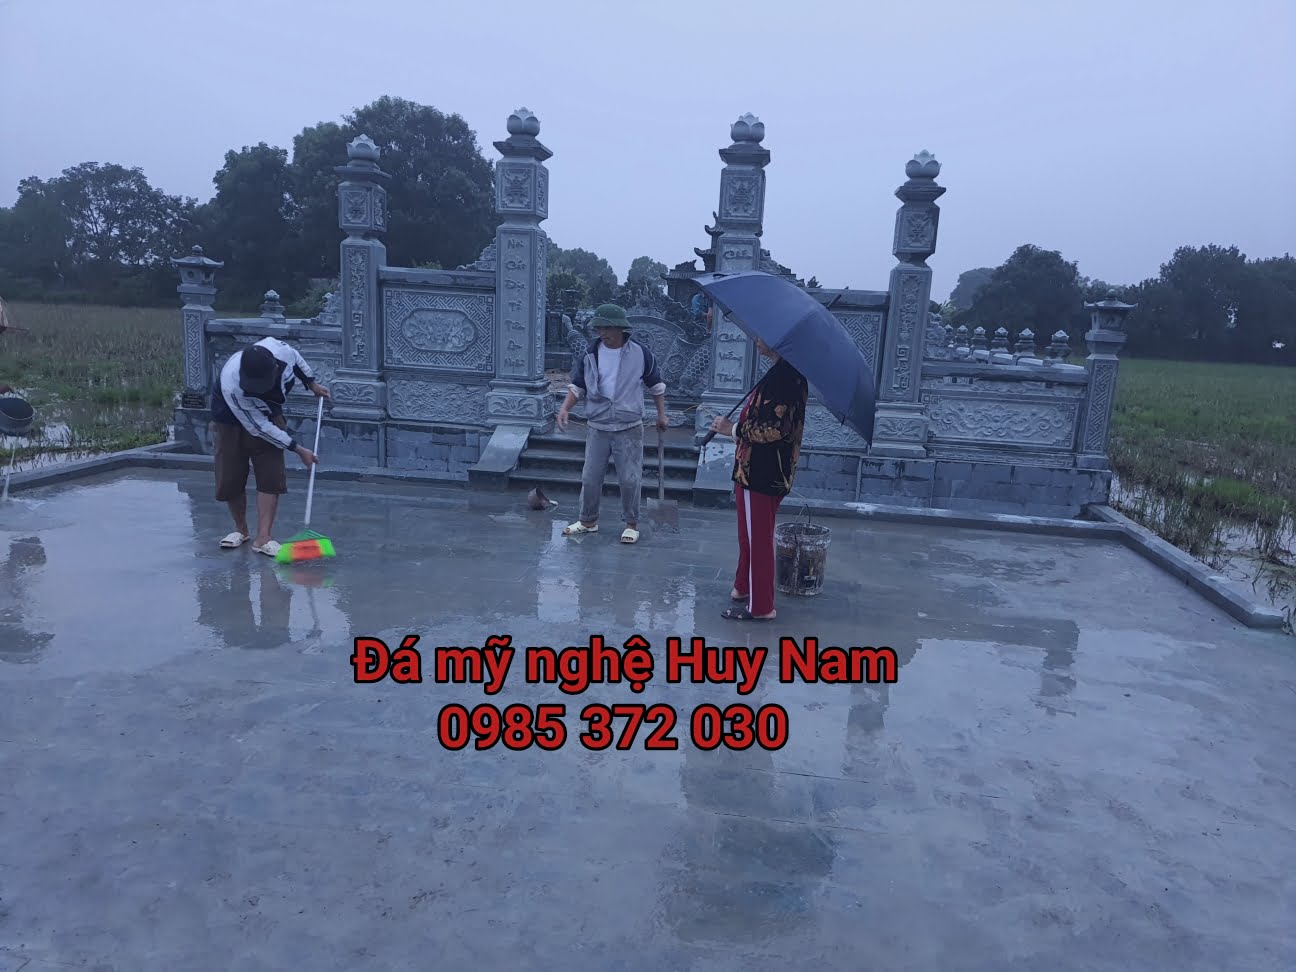 Dọn dẹp, vệ sinh công trình khu lăng mộ đá xanh rêu đẹp tại Thường Tín, Hà Nội sau thi công